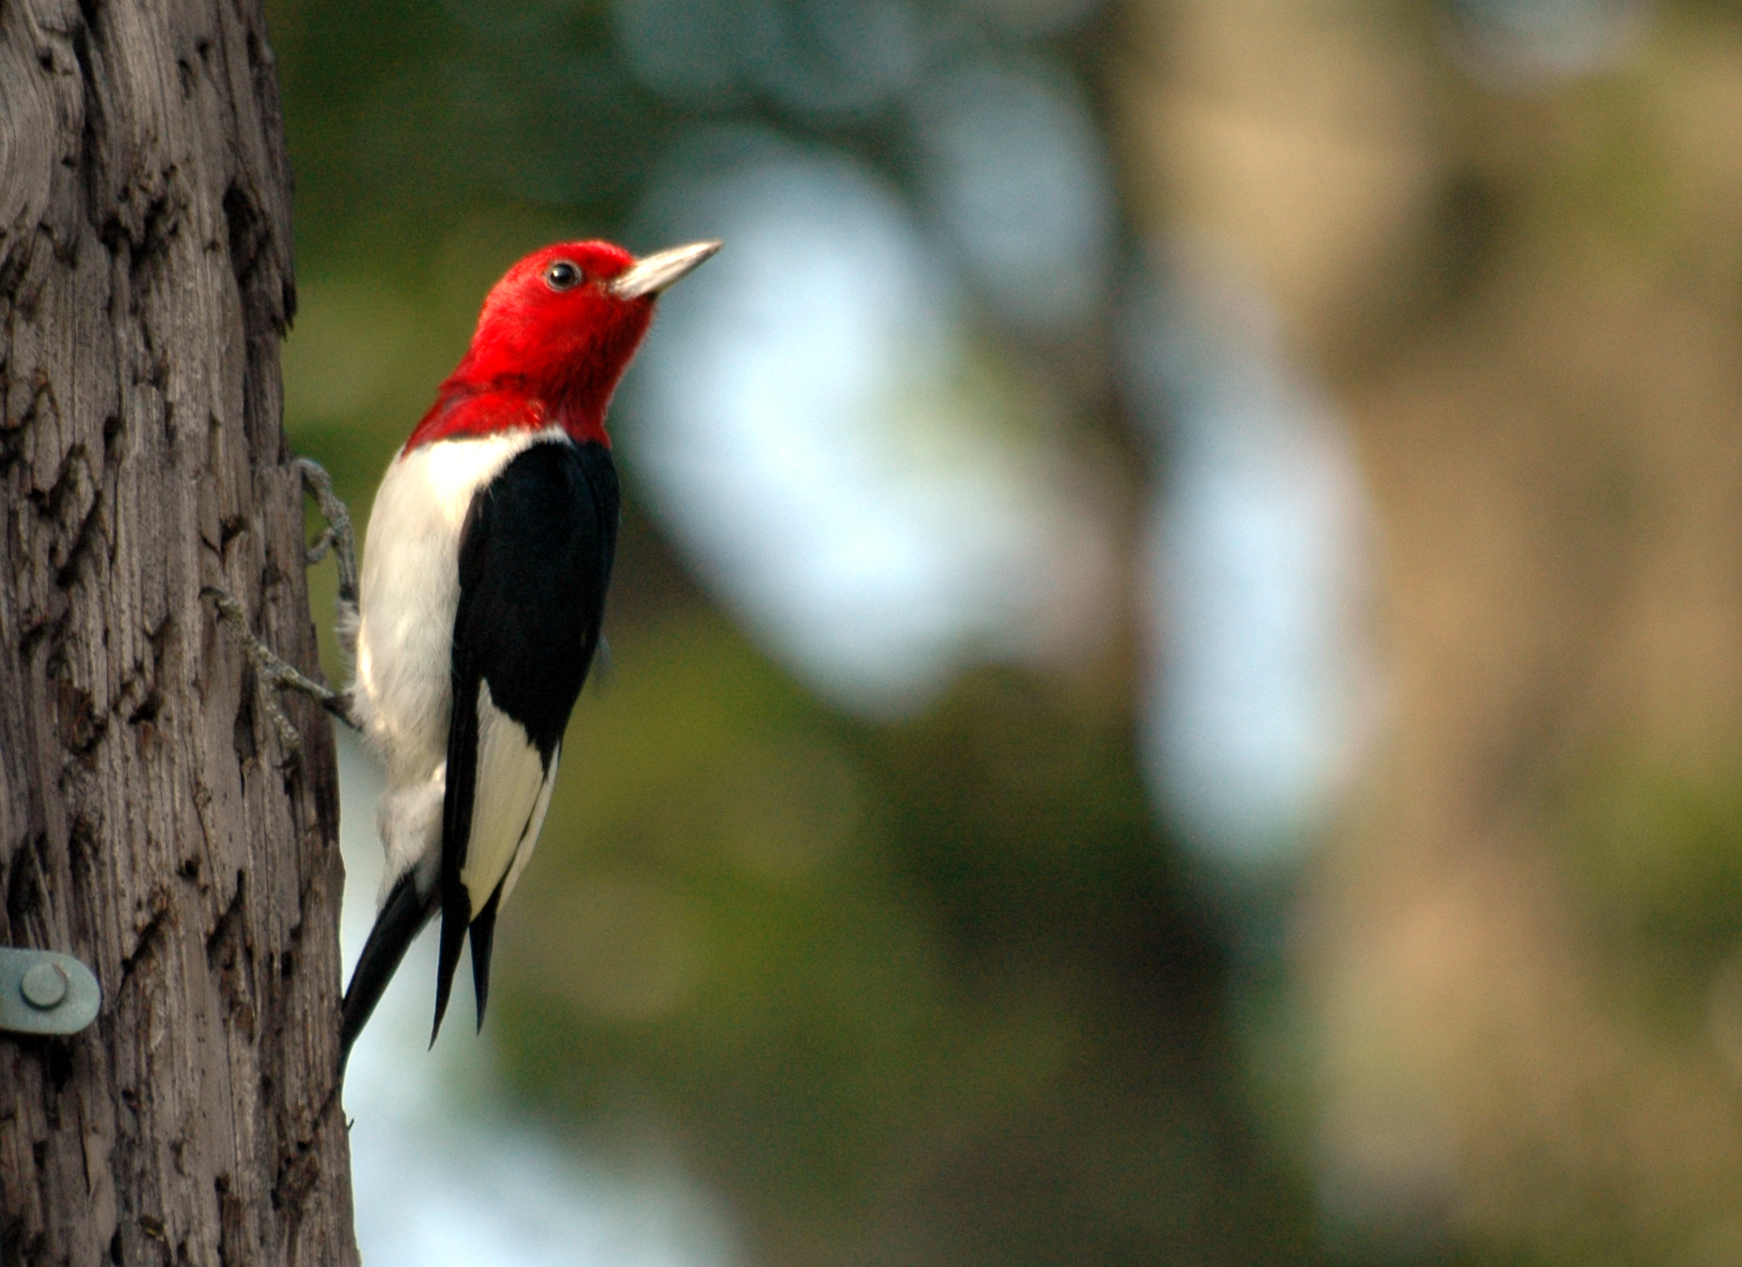 Pretty Red-headed woodpecker